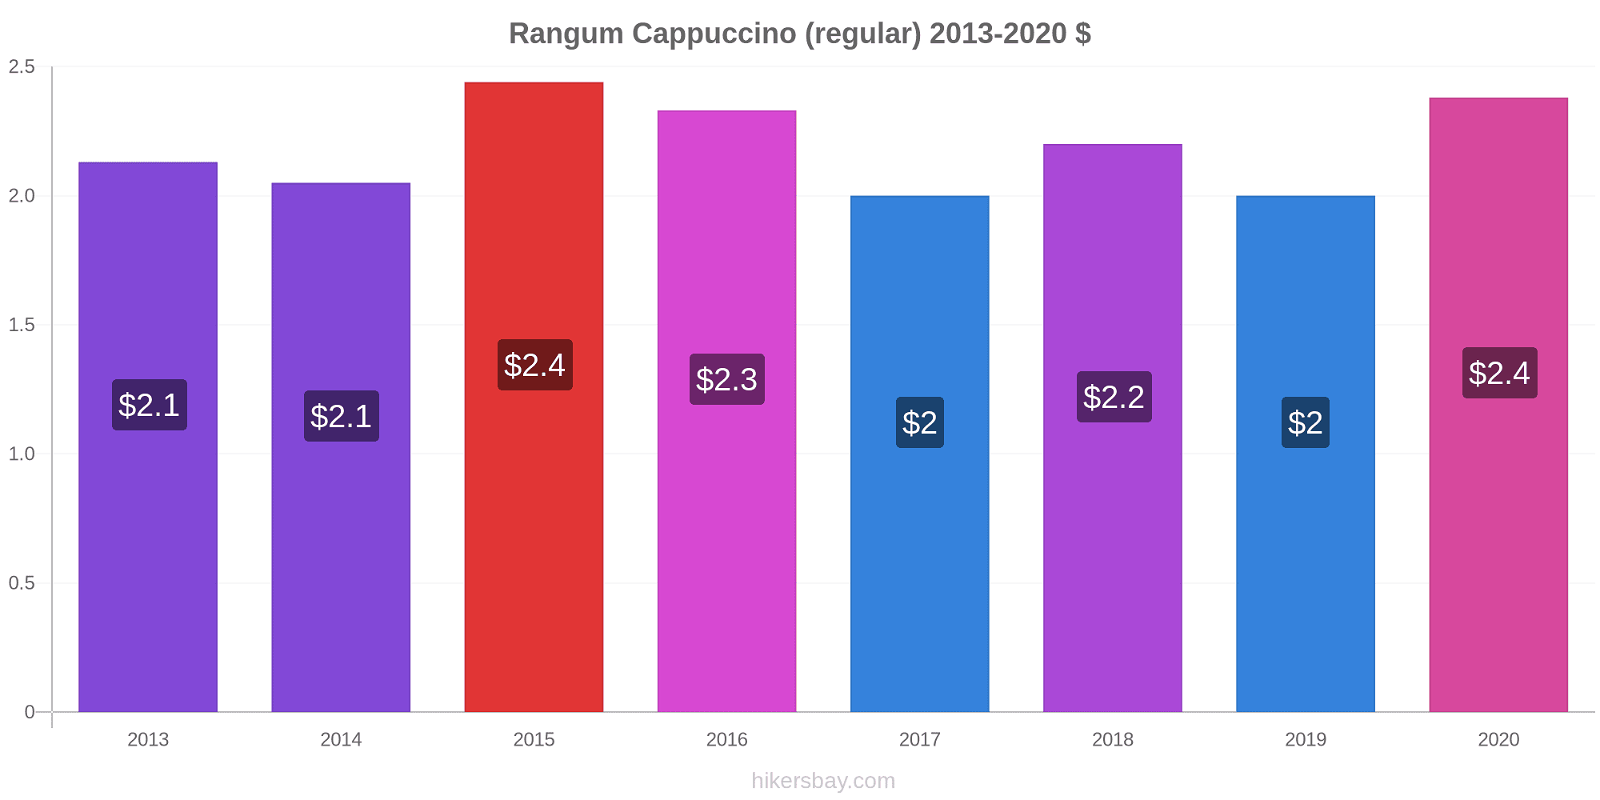 Rangum variação de preço Capuccino (regular) hikersbay.com